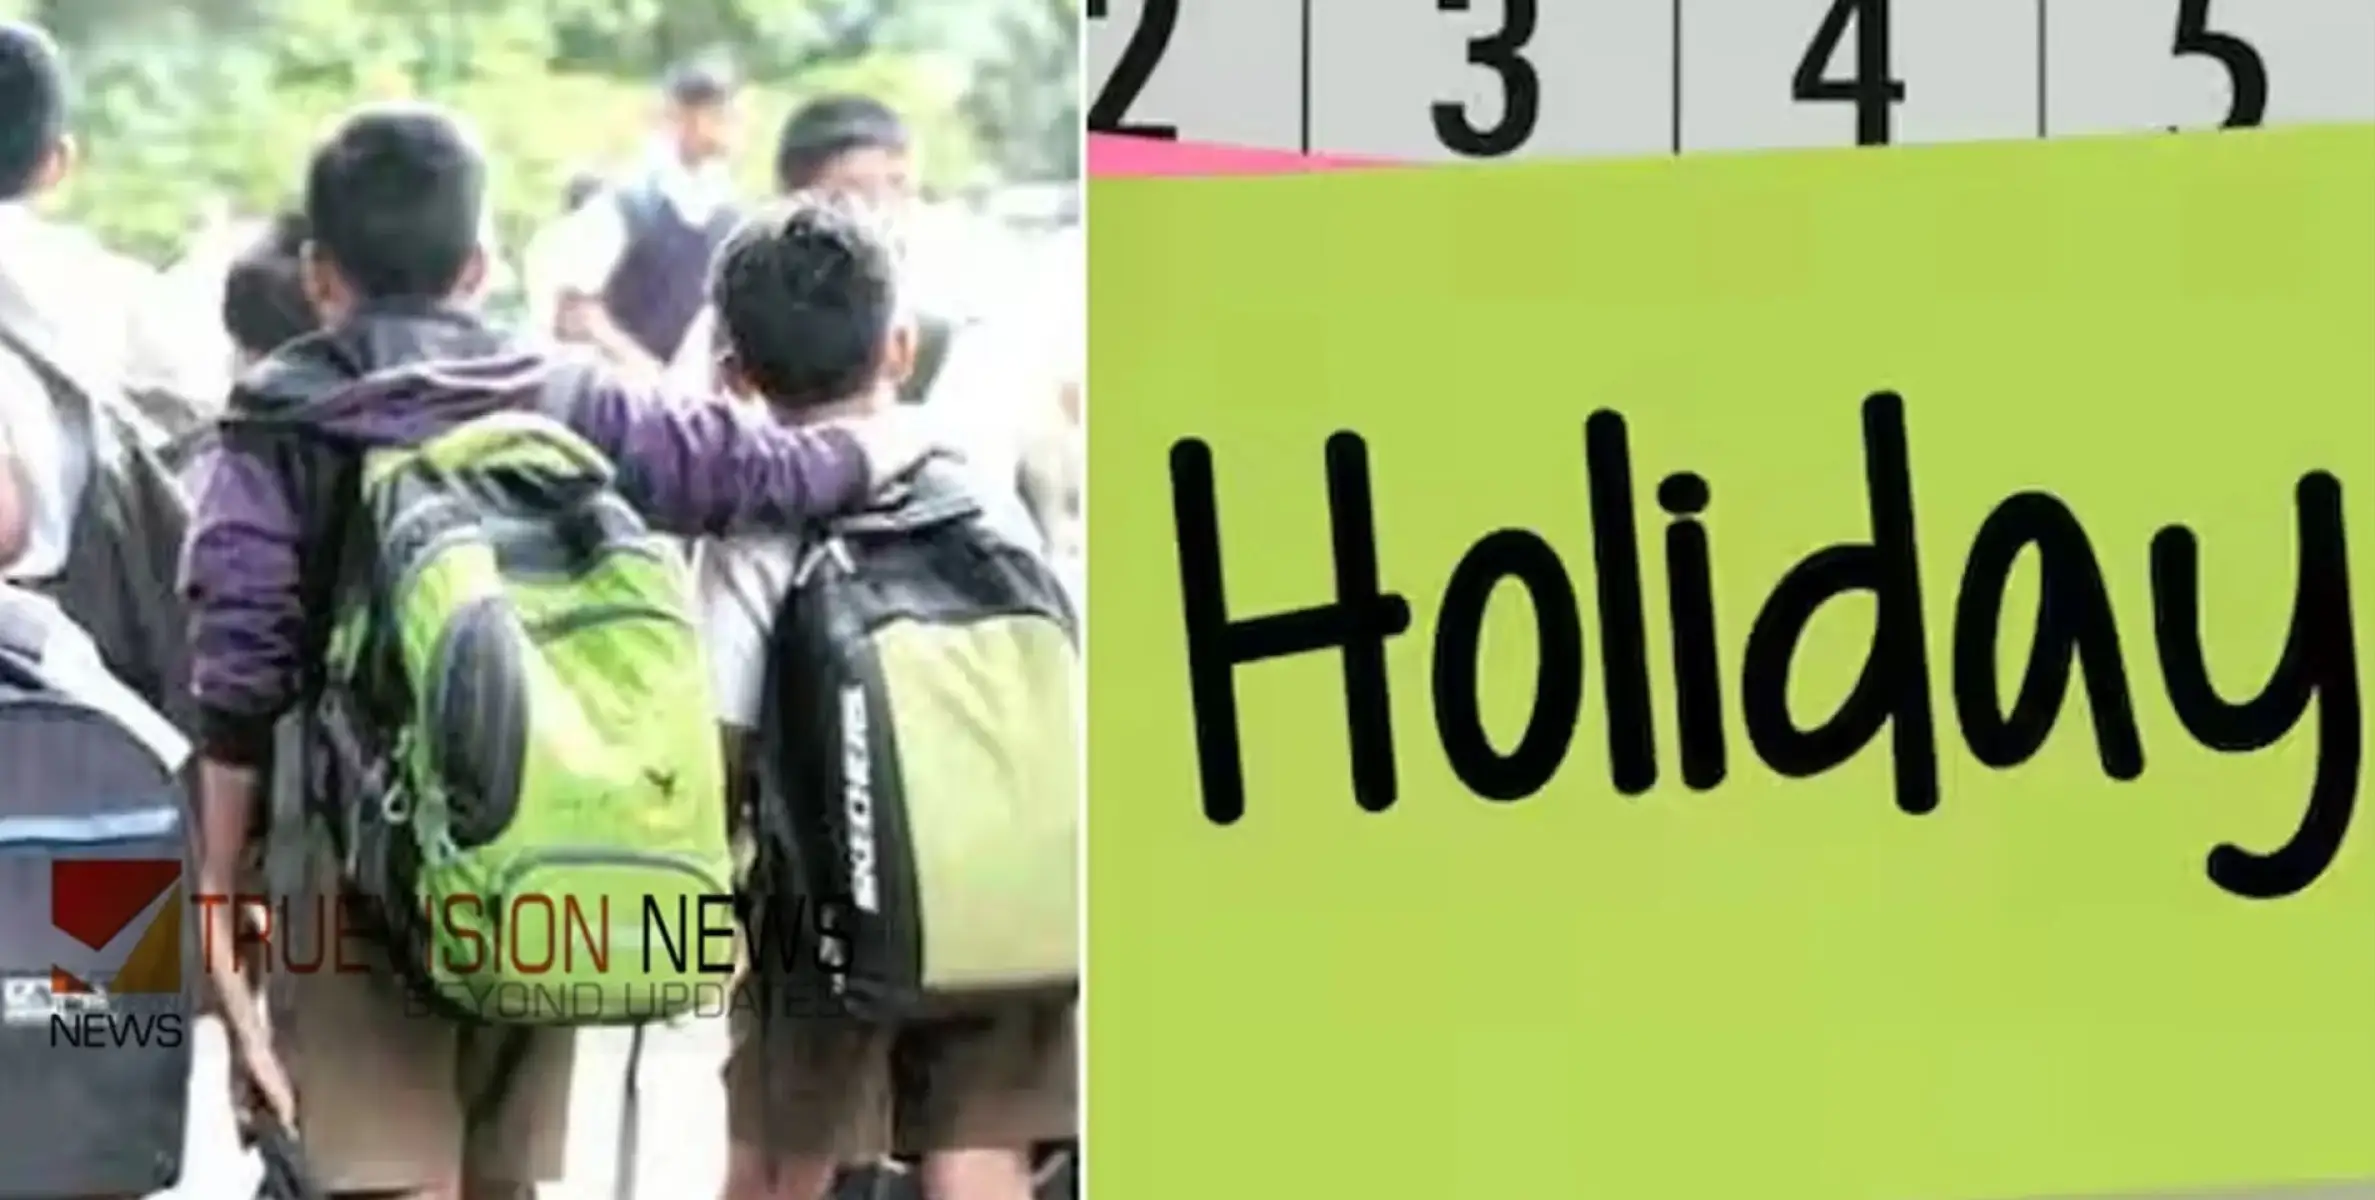 #Holiday | ഉഷ്ണതരംഗ സാധ്യത: മെയ് 6 വരെ പ്രൊഫഷണൽ കോളേജുകൾ ഉൾപ്പെടെയുള്ള വിദ്യാഭ്യാസ സ്ഥാപനങ്ങൾക്ക് അവധി 